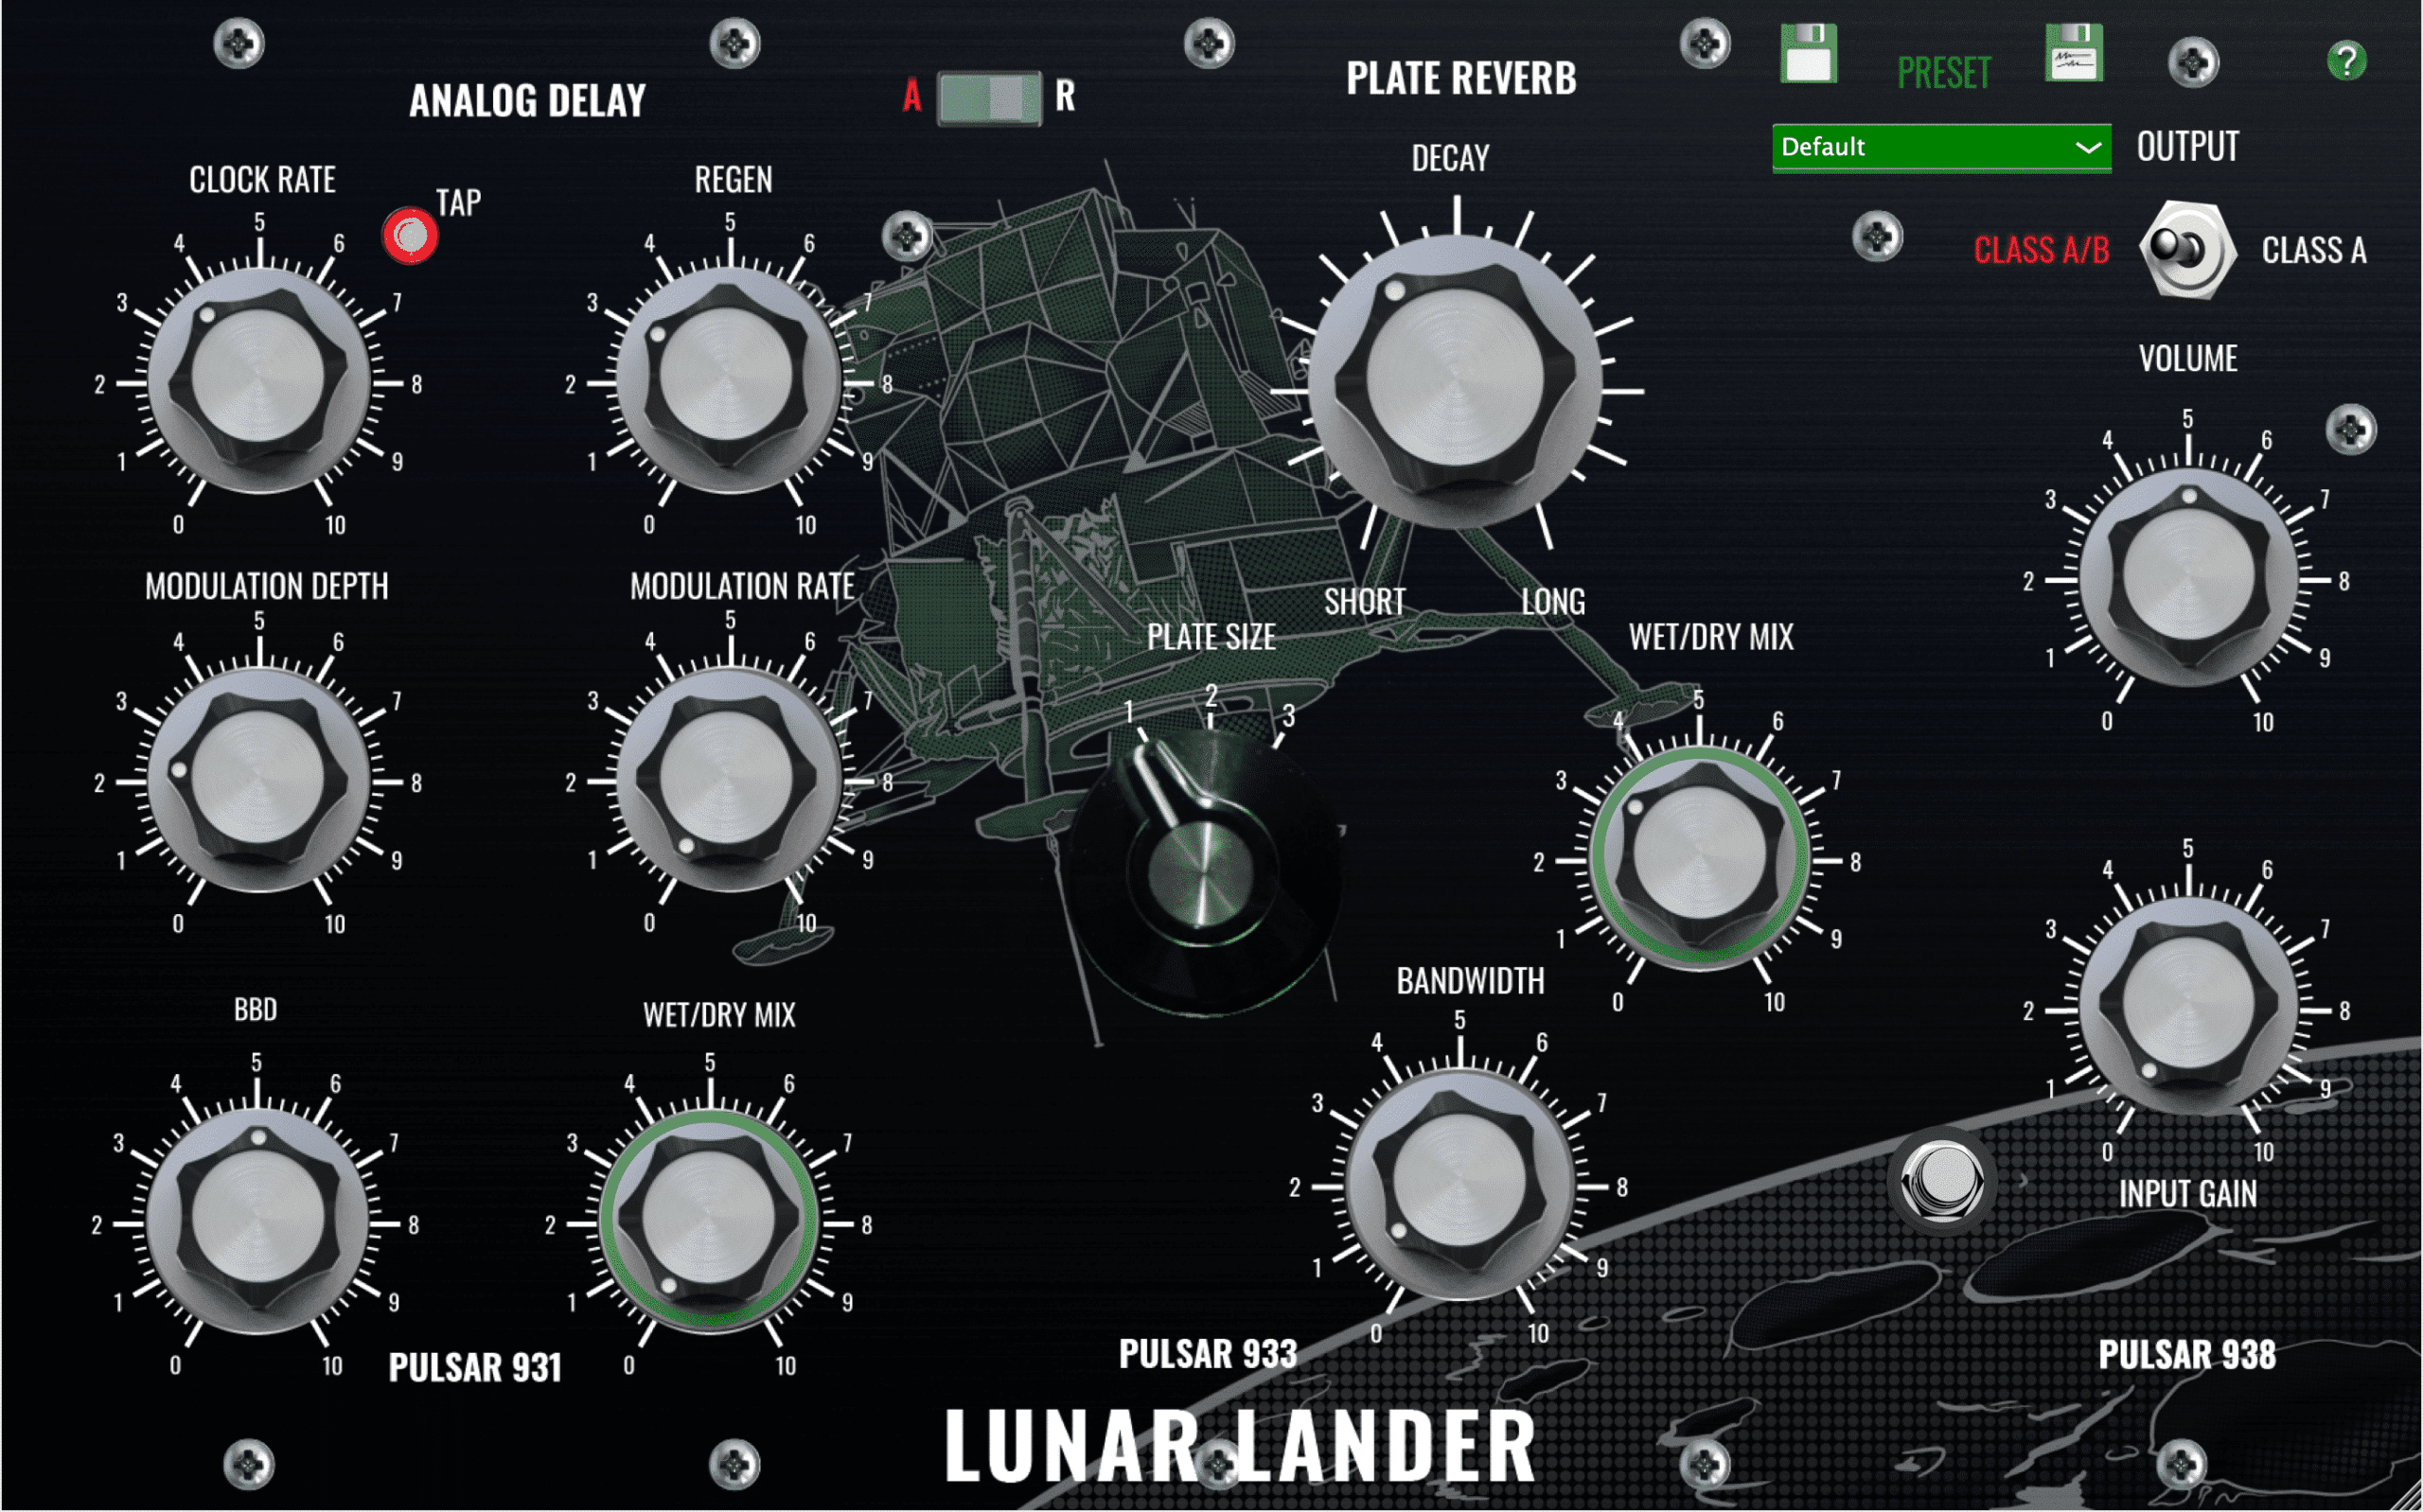 Lunar Lander v1.1 released